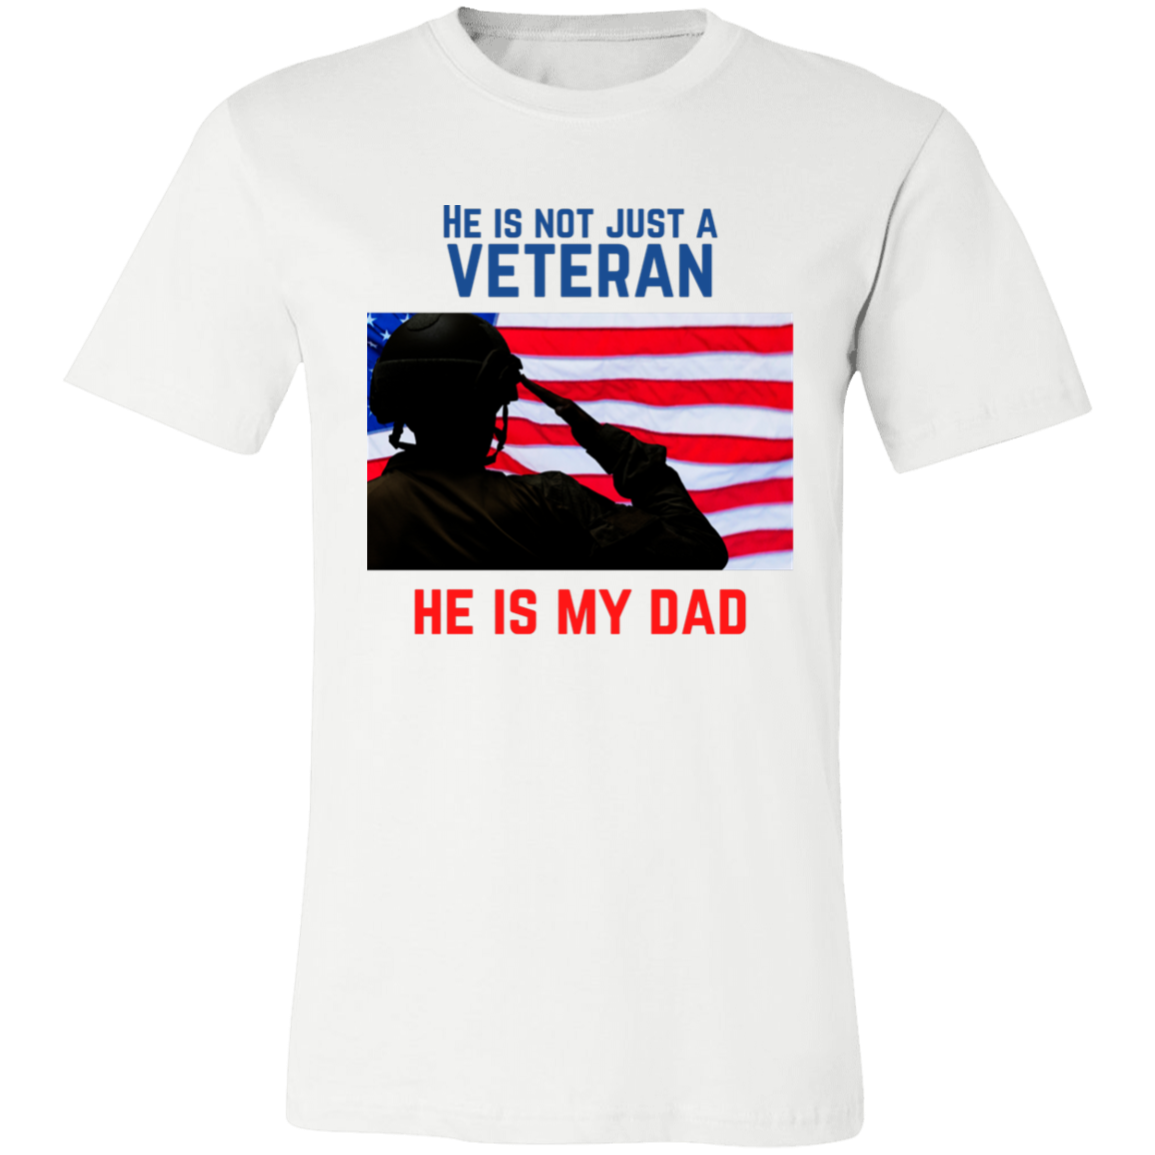 He is Not Just a Veteran, He is My Dad